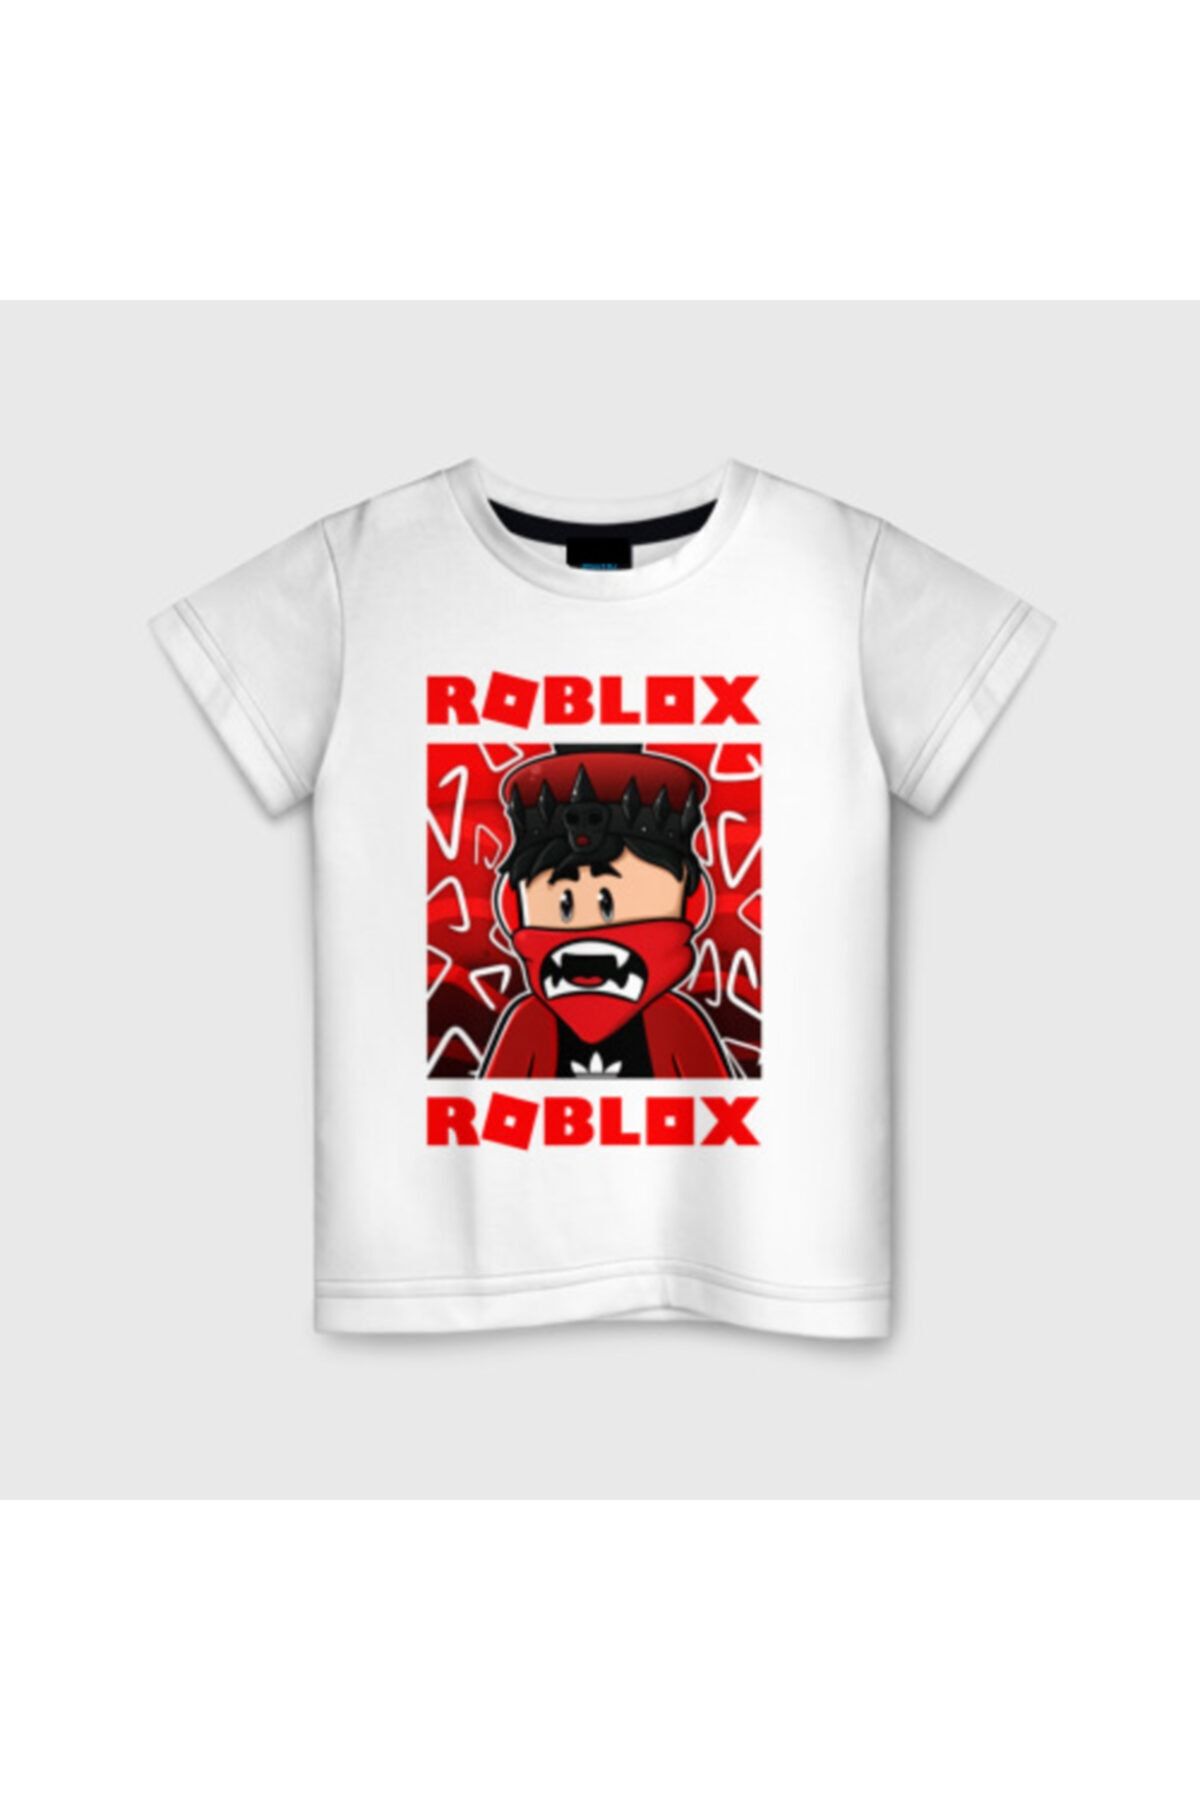 DIGERUI Röblox Kırmızı Roblox Cocuk Tişörtü Model894